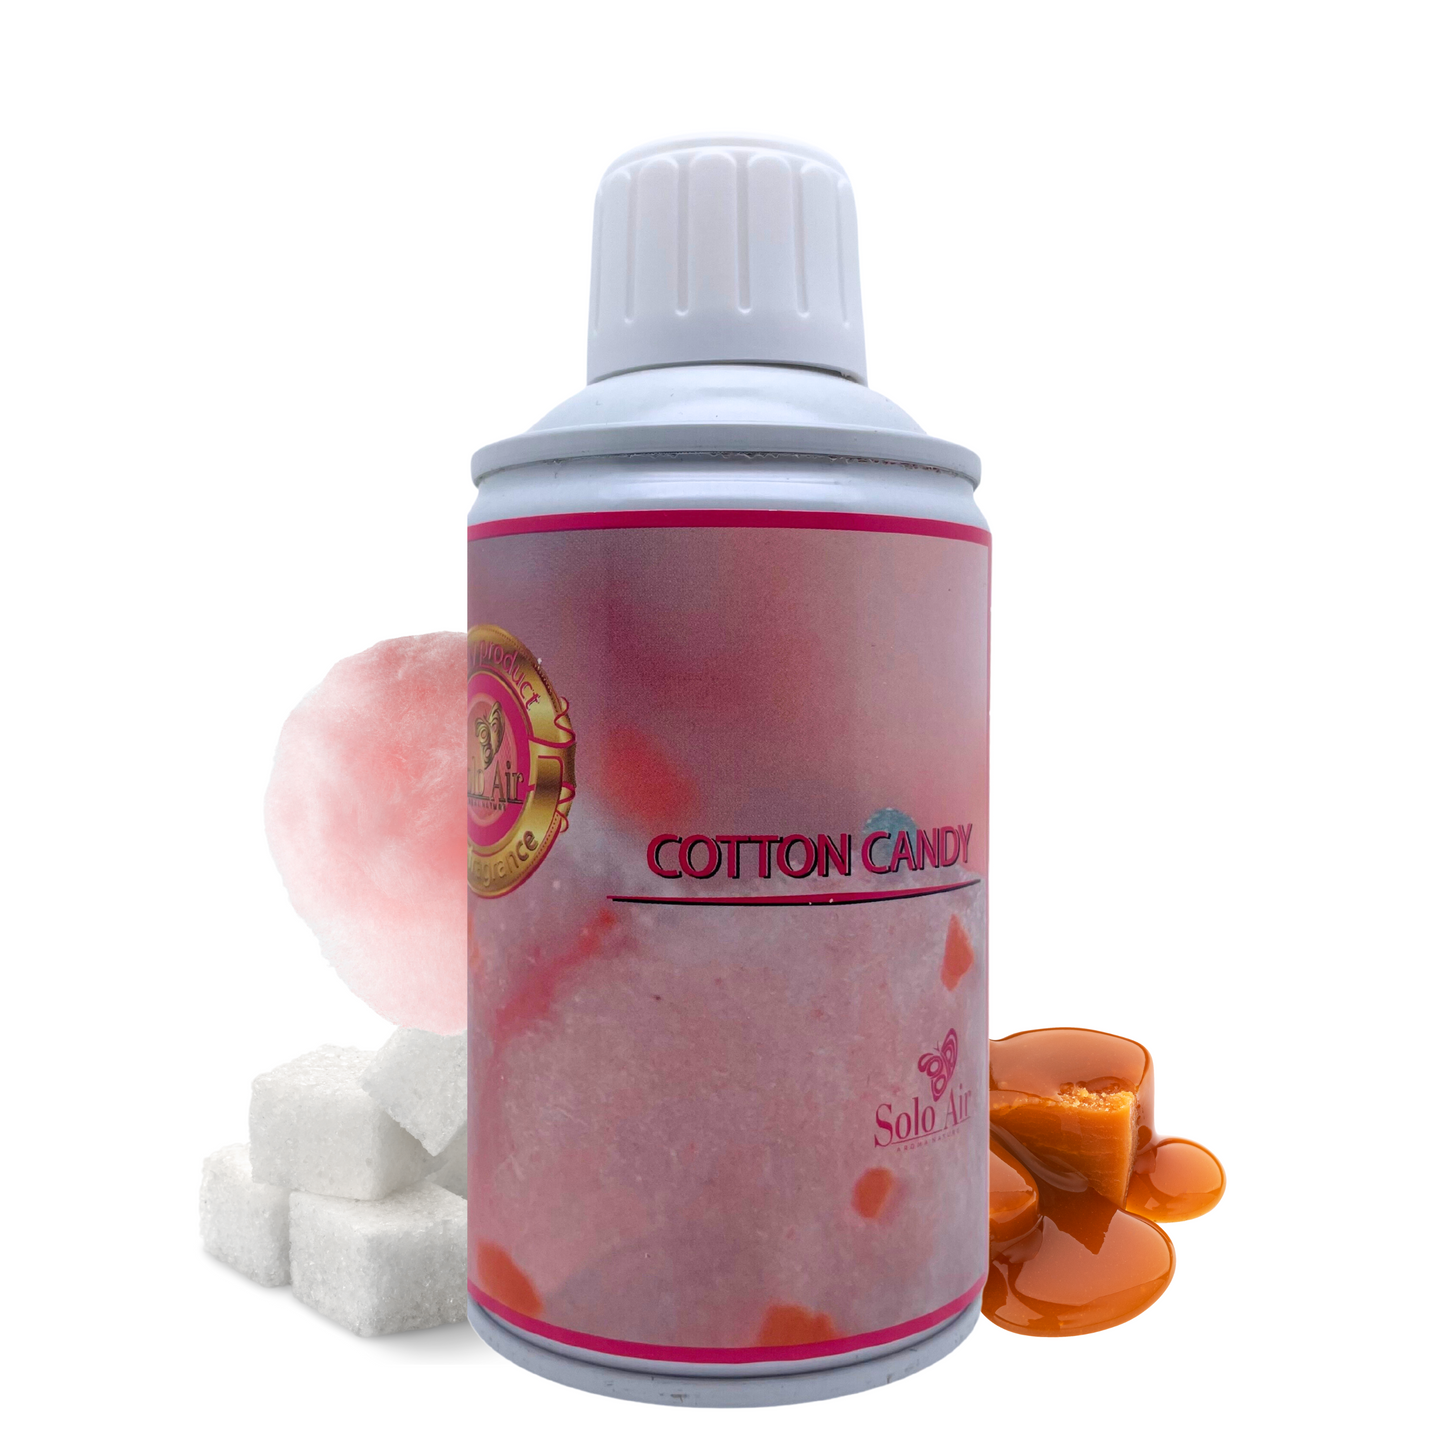 Raumspray und Duftkerzen mit Süßigkeiten-Aroma: Marshmallow und Zuckerwatte